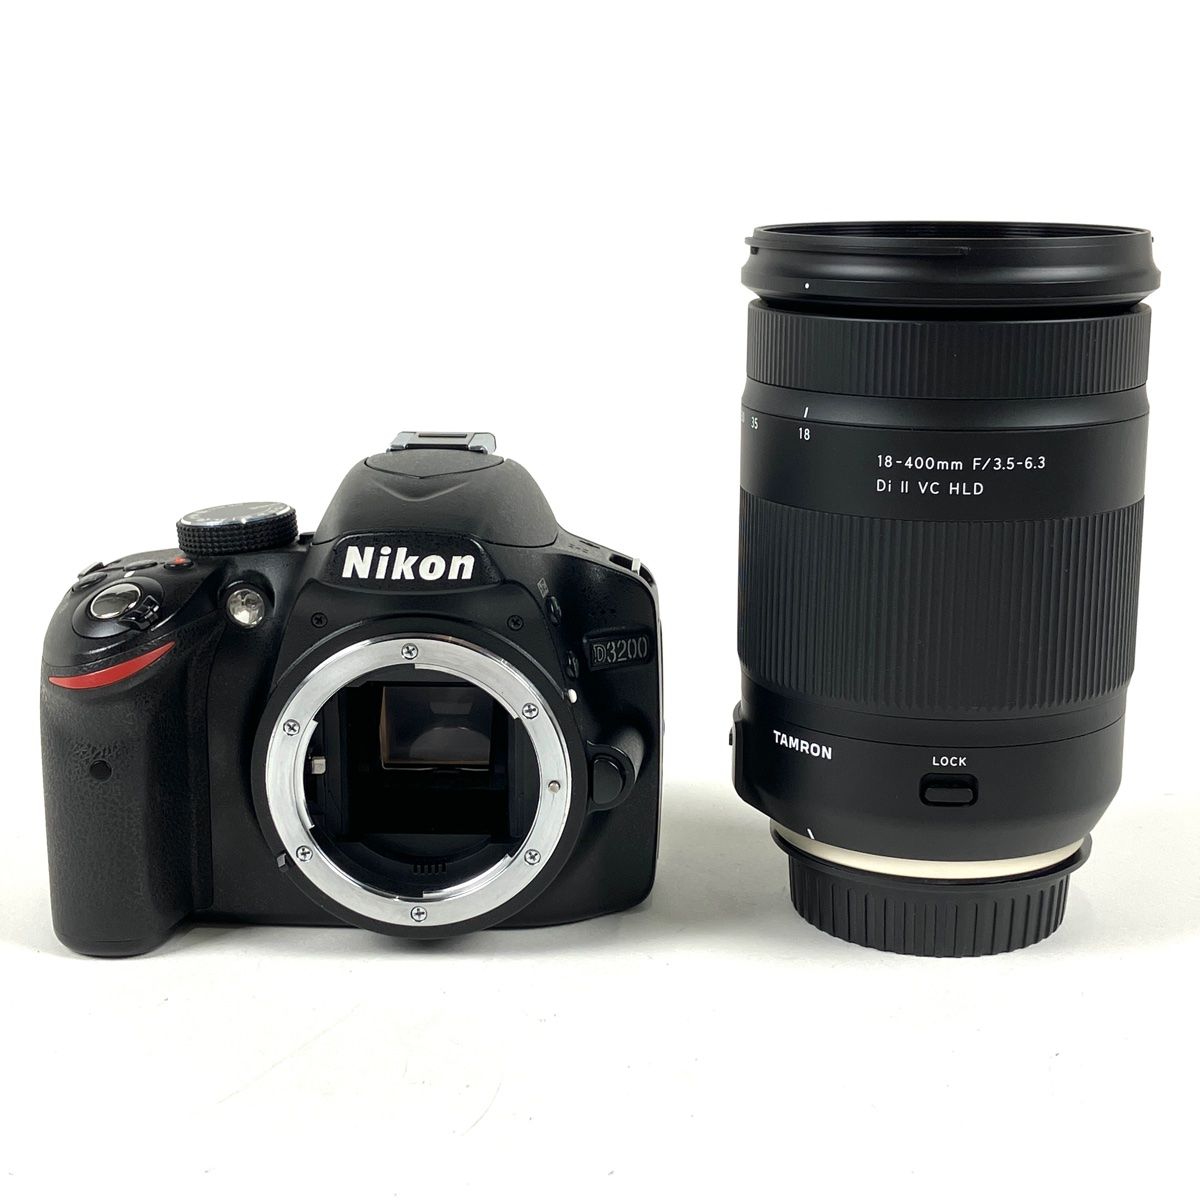 ニコン Nikon D3200 + TAMRON 18-400mm F3.5-6.3 Di II VC HLD ...